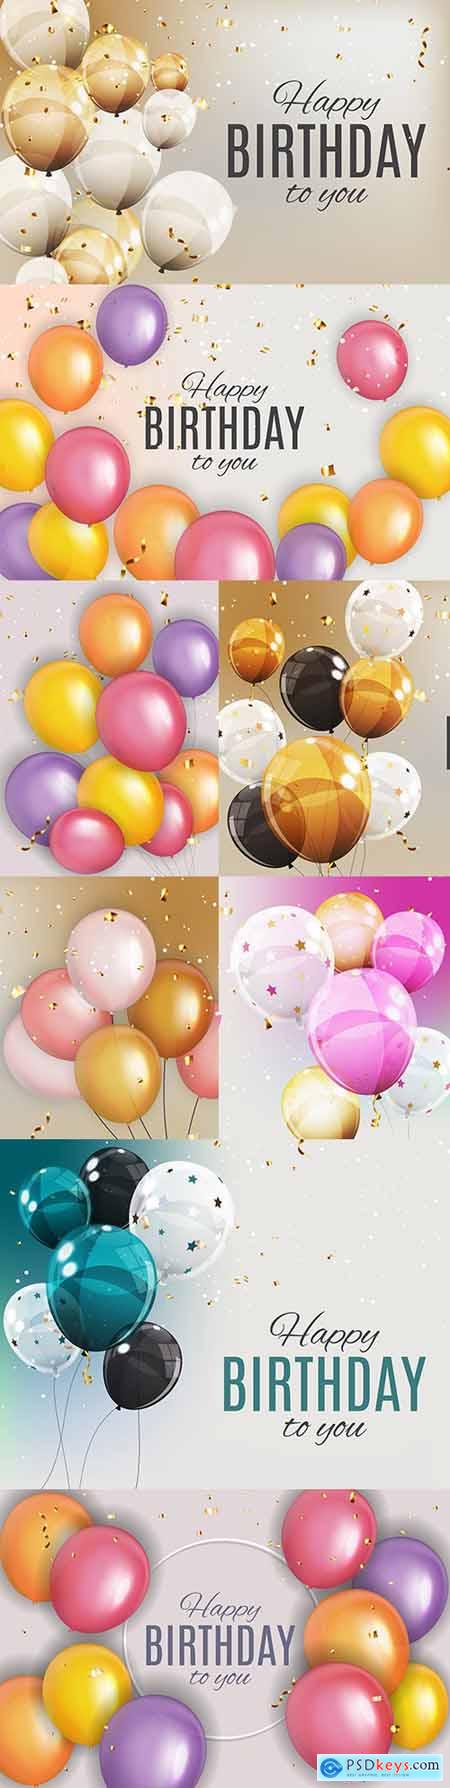 Happy birthday holiday invitation realistic balloons 12